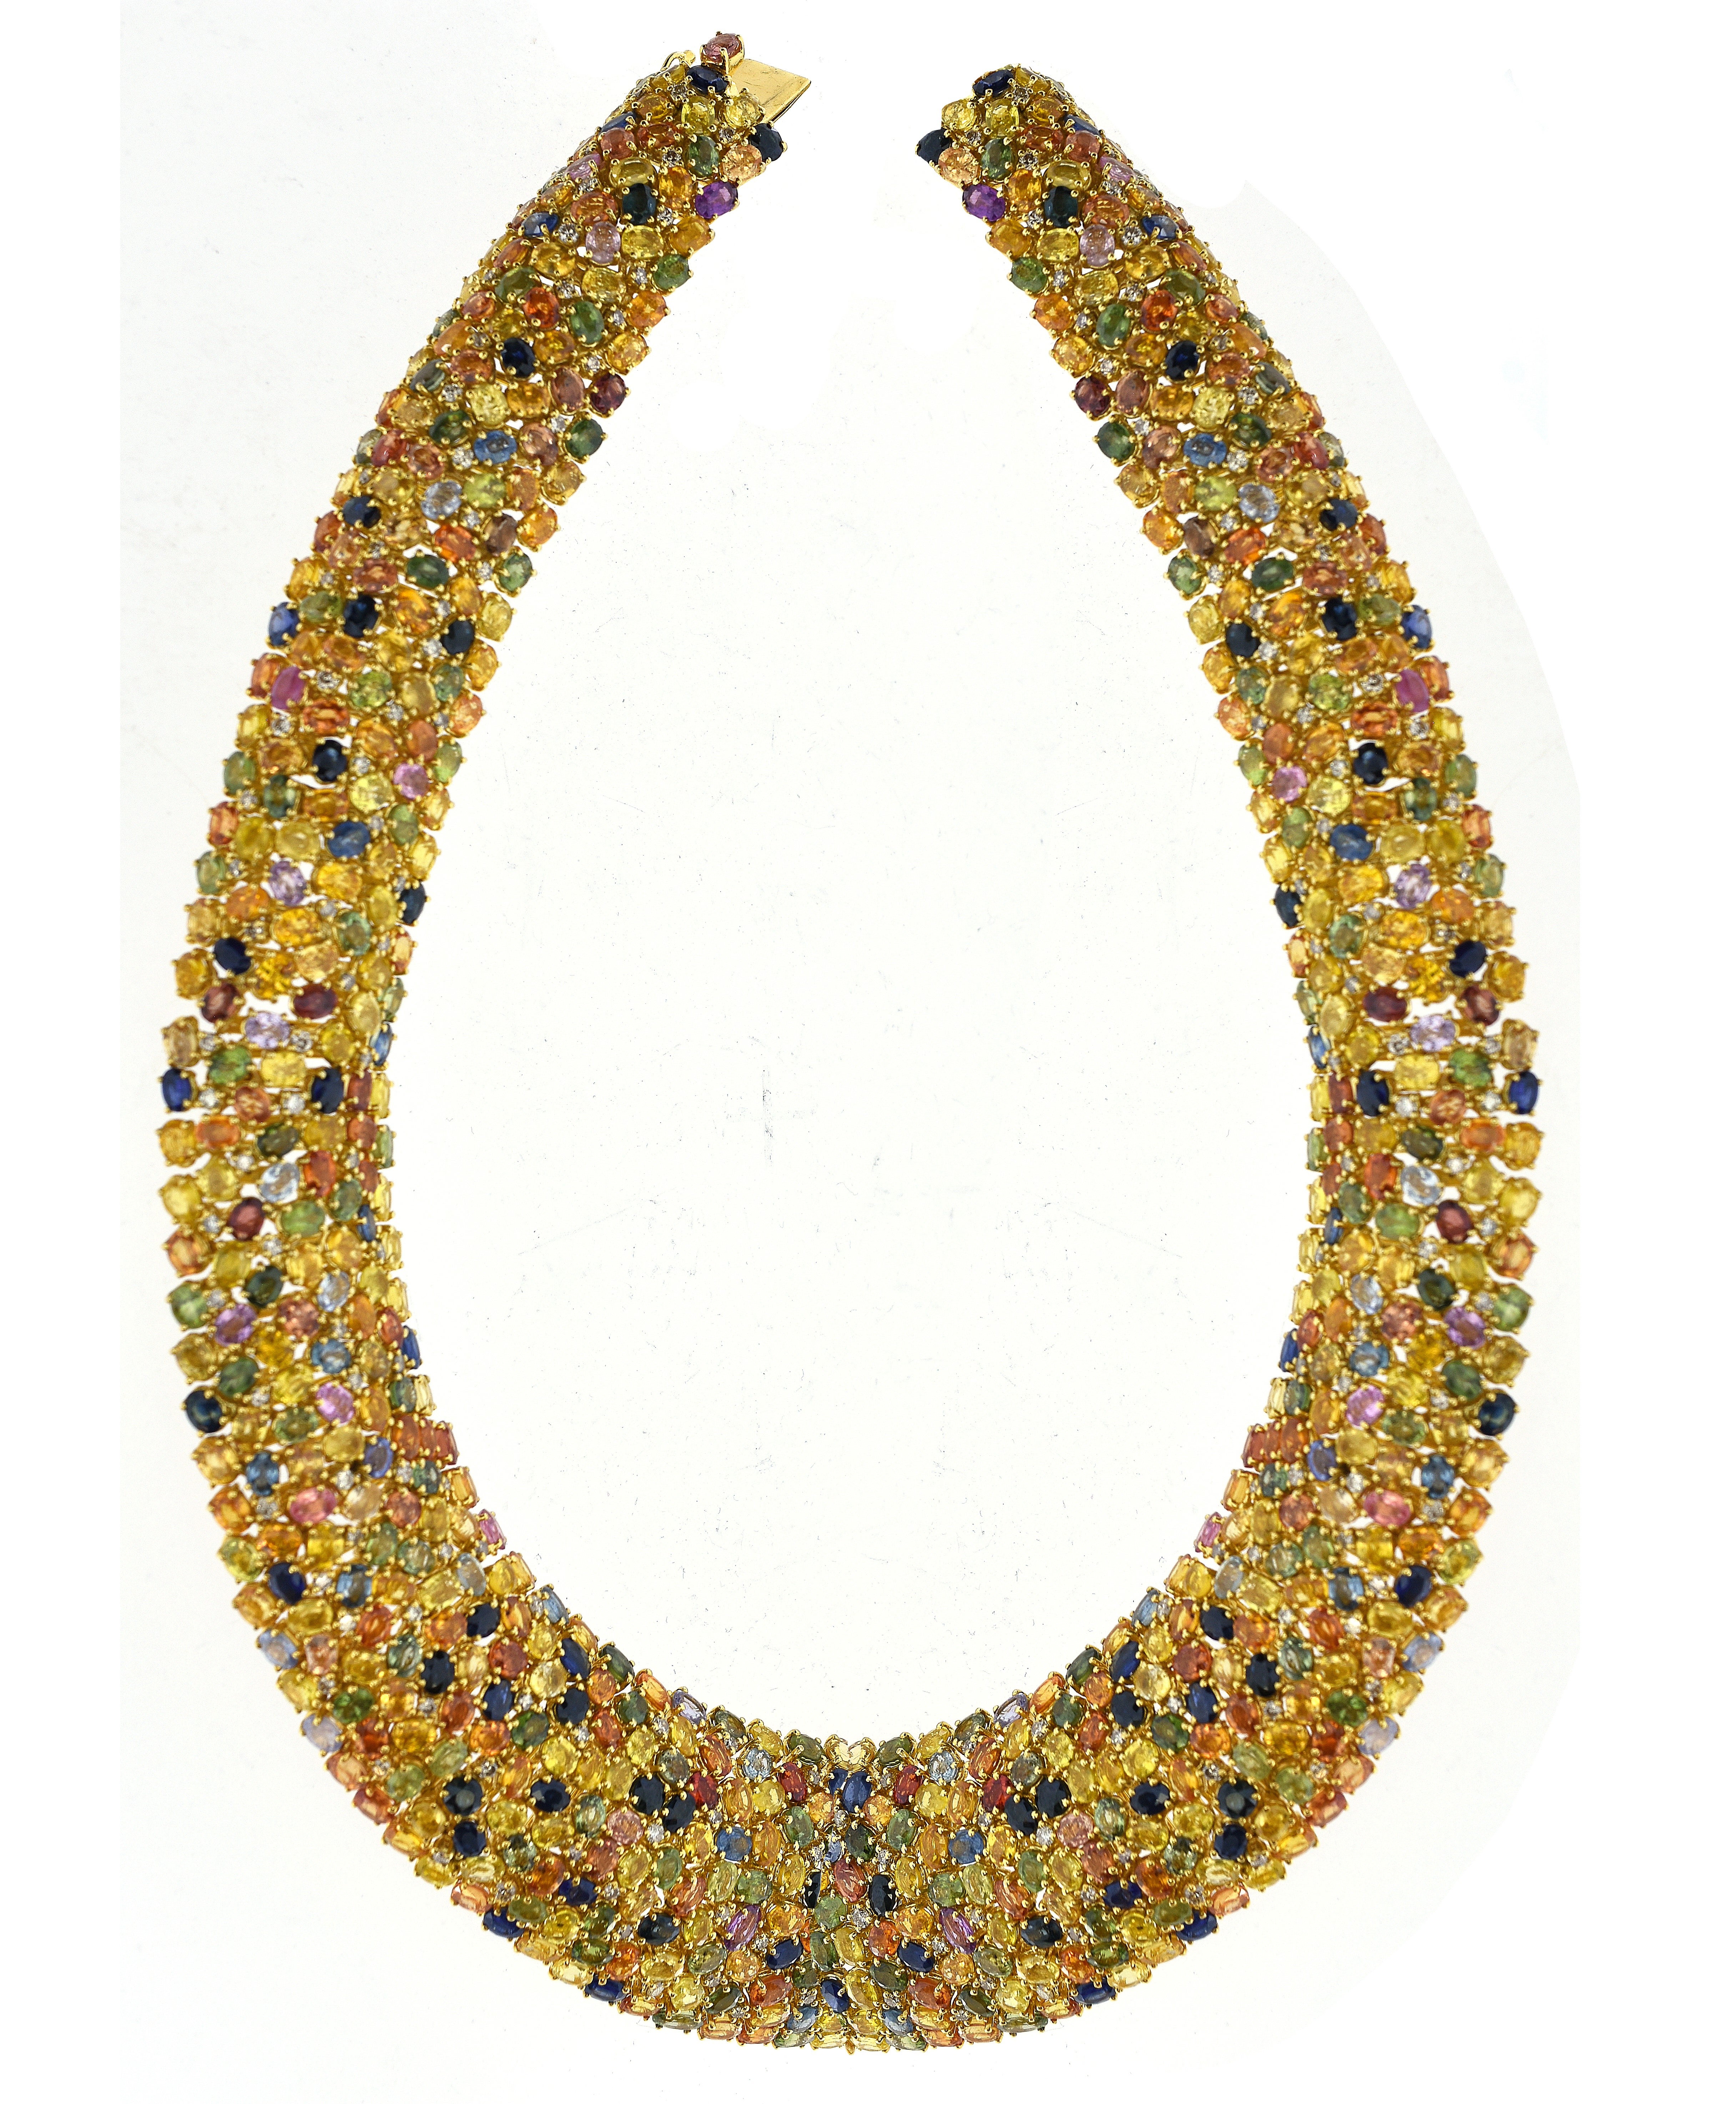 197.73 Carat Multi Color Diamond & Sapphire "Sweetie" Necklace For Sale